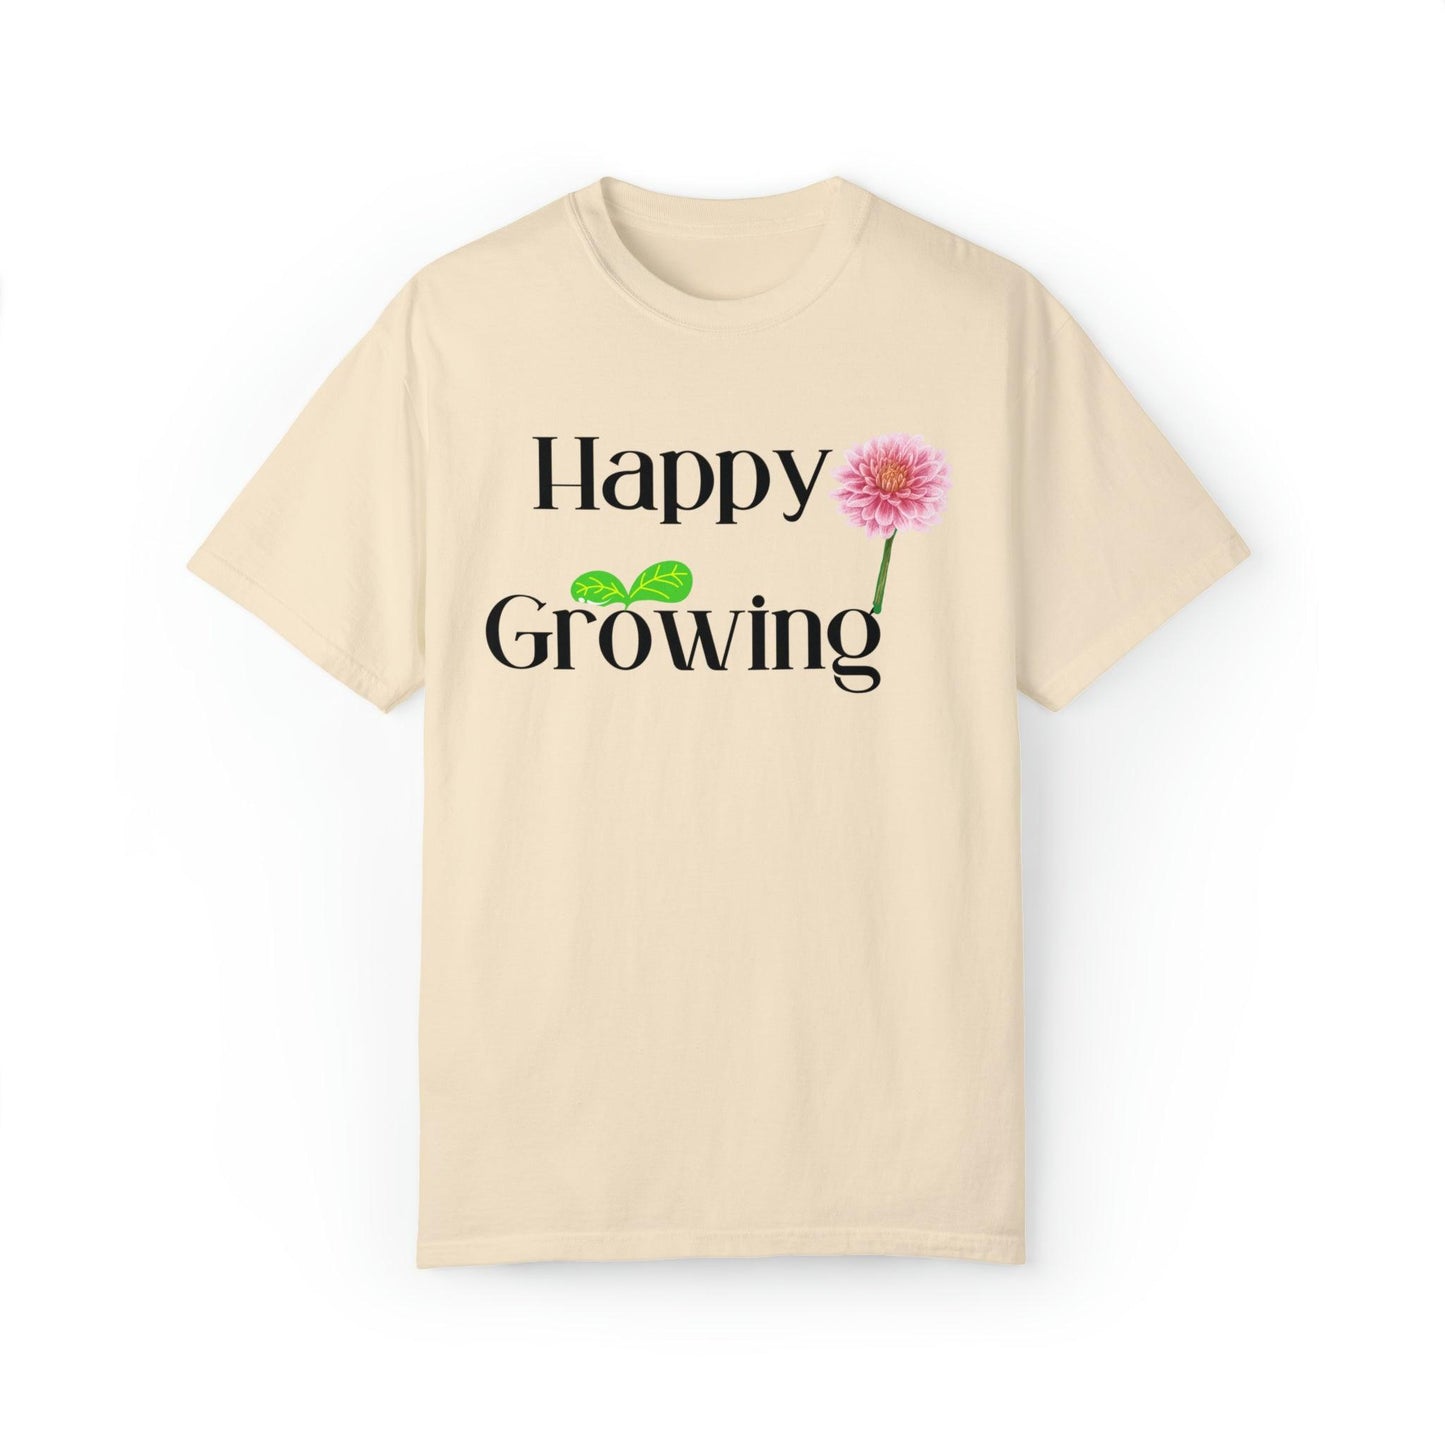 Farmer gift shirt Farmer life shirts, Plant lover shirt, Plant lovers gift, Plant lover gift, Gardener shirt, Plants shirt